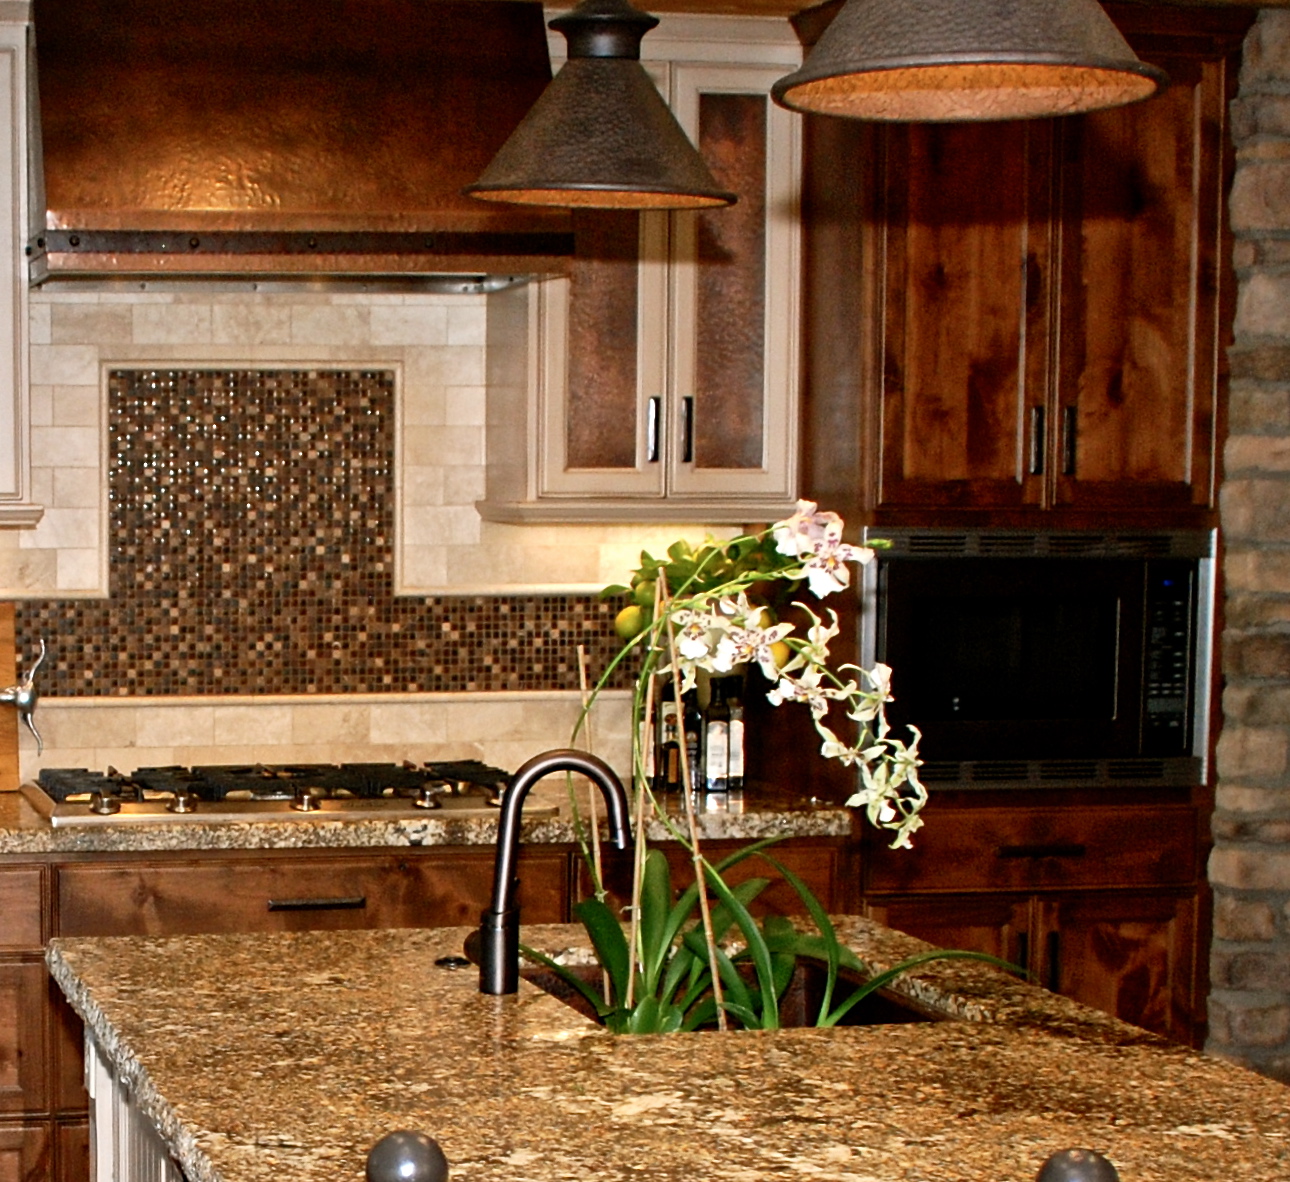 stove backsplash tile design and copper range